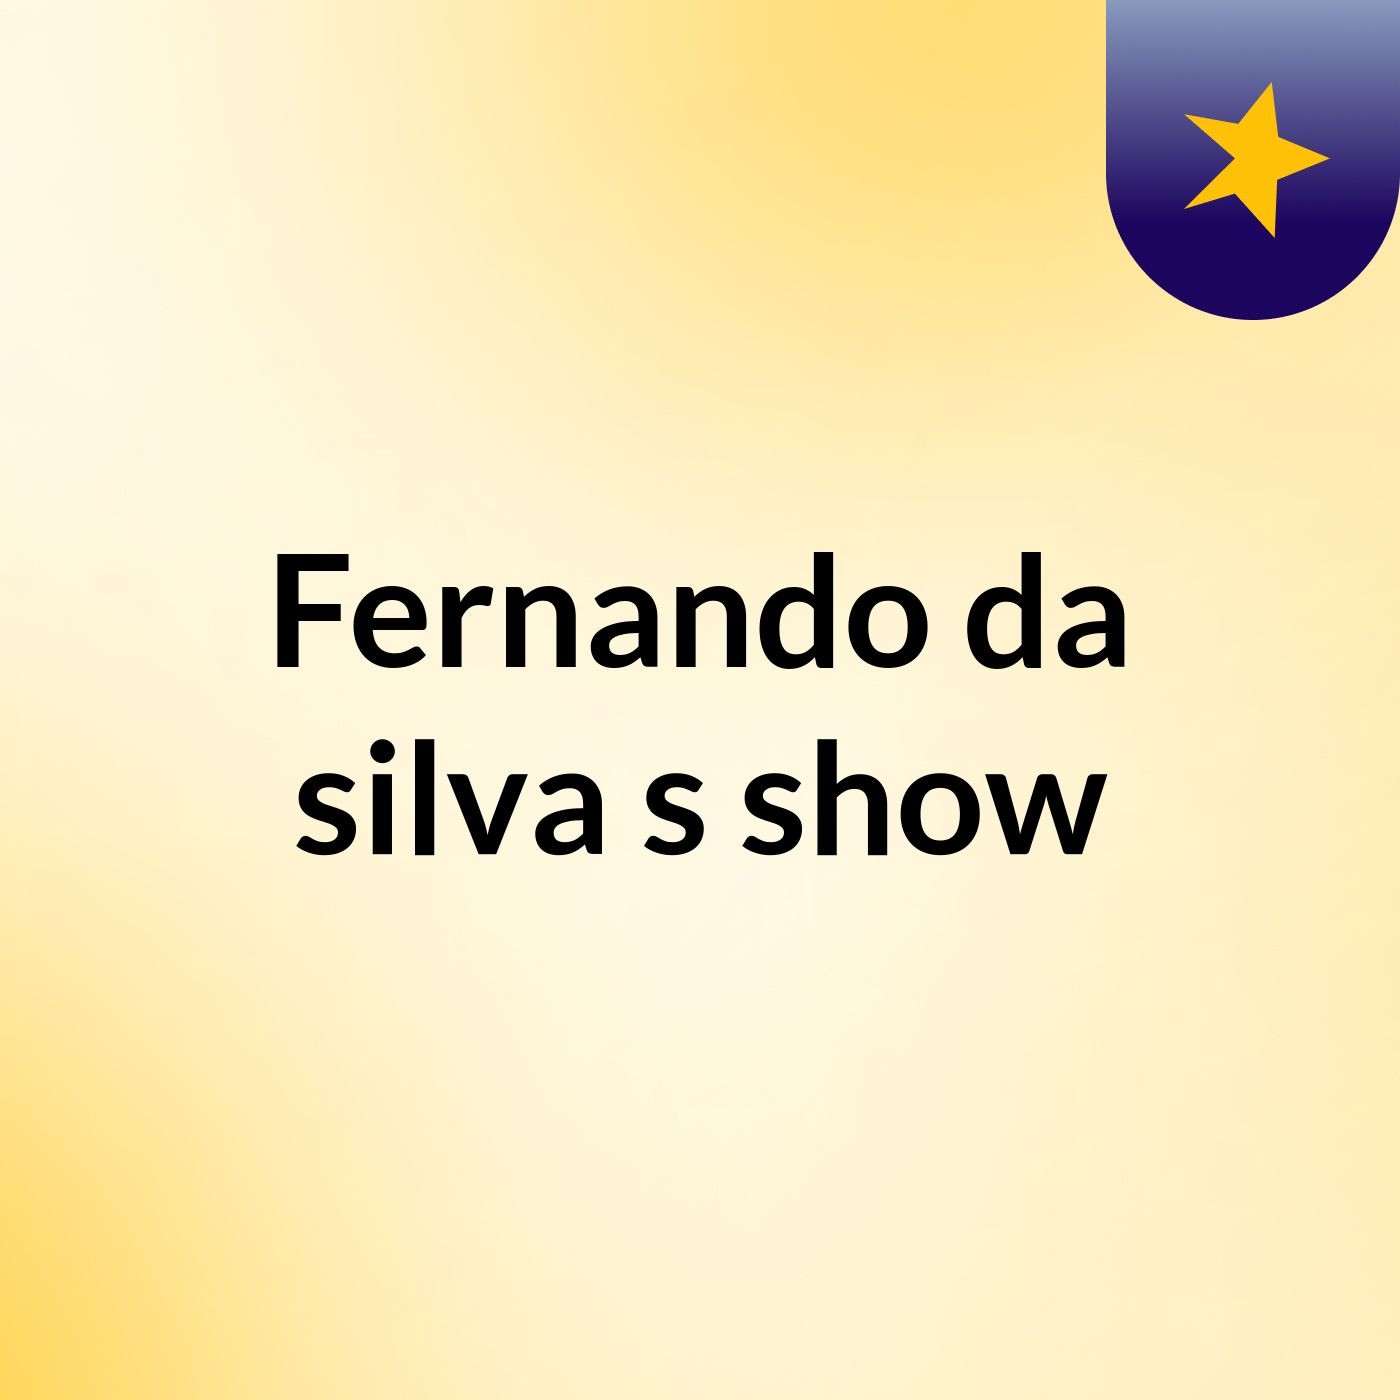 Fernando da silva's show